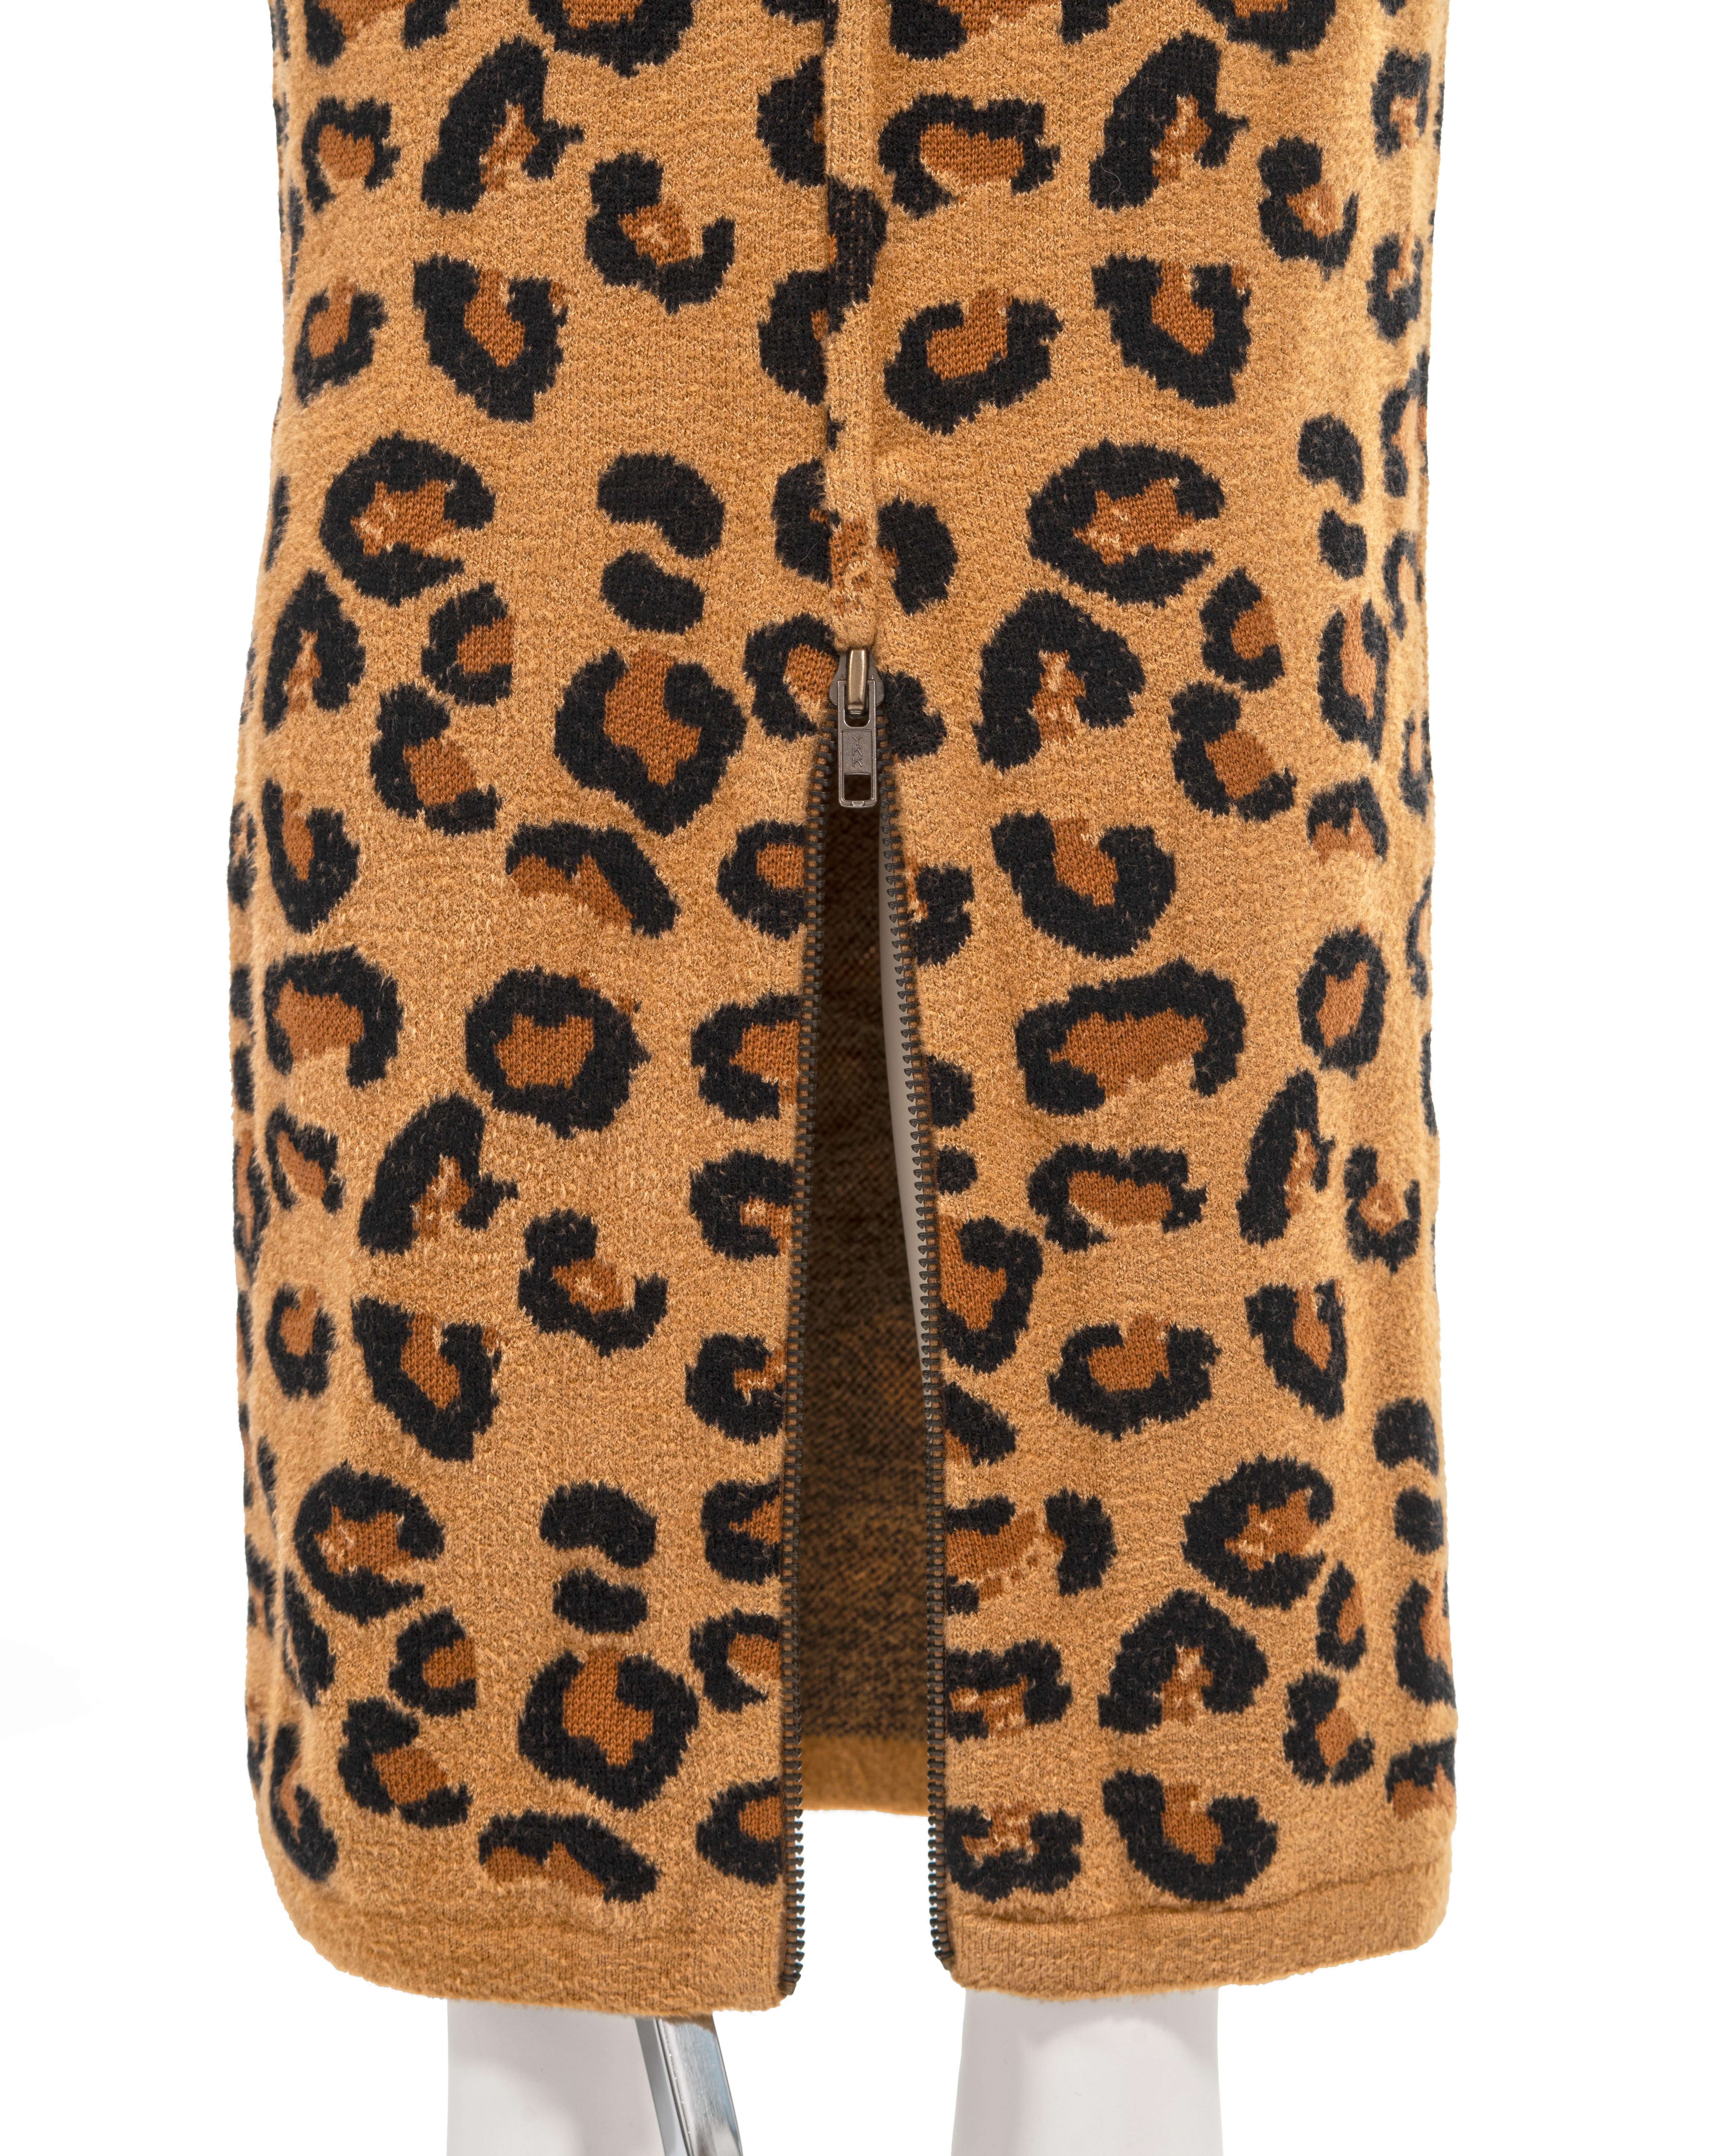 Azzedine Alaia leopard knit bateau-neck bodycon dress, fw 1991 12